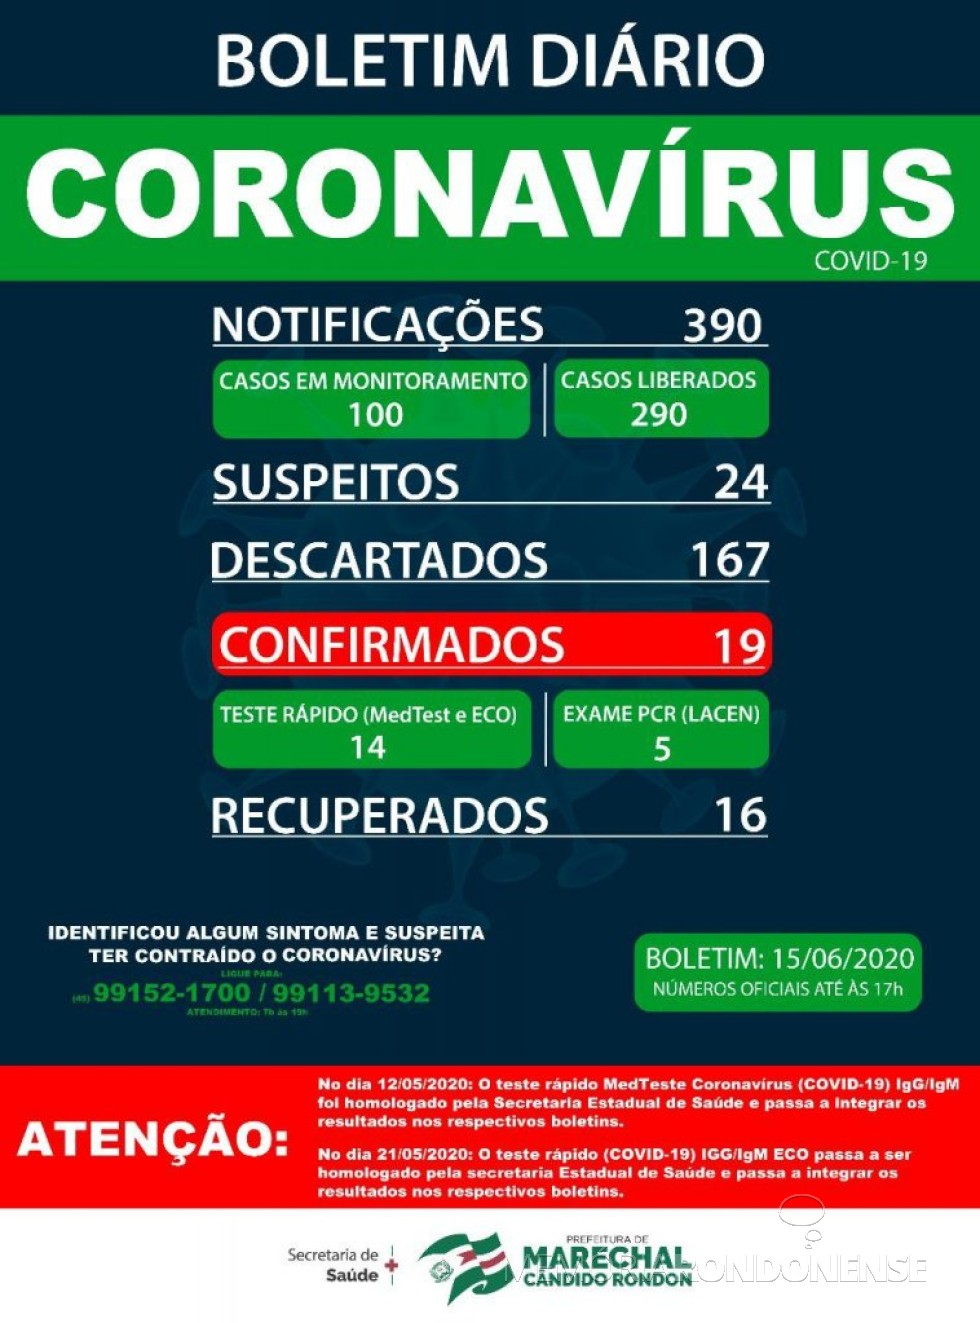 || Boletim epidemiológico da Secretaria de Saúde de Marechal Cândido Rondon sobre o COVID 19 no município no dia 15.06.2020.
Imagem: Acervo Imprensa PM-MCR - FOTO 21 -
